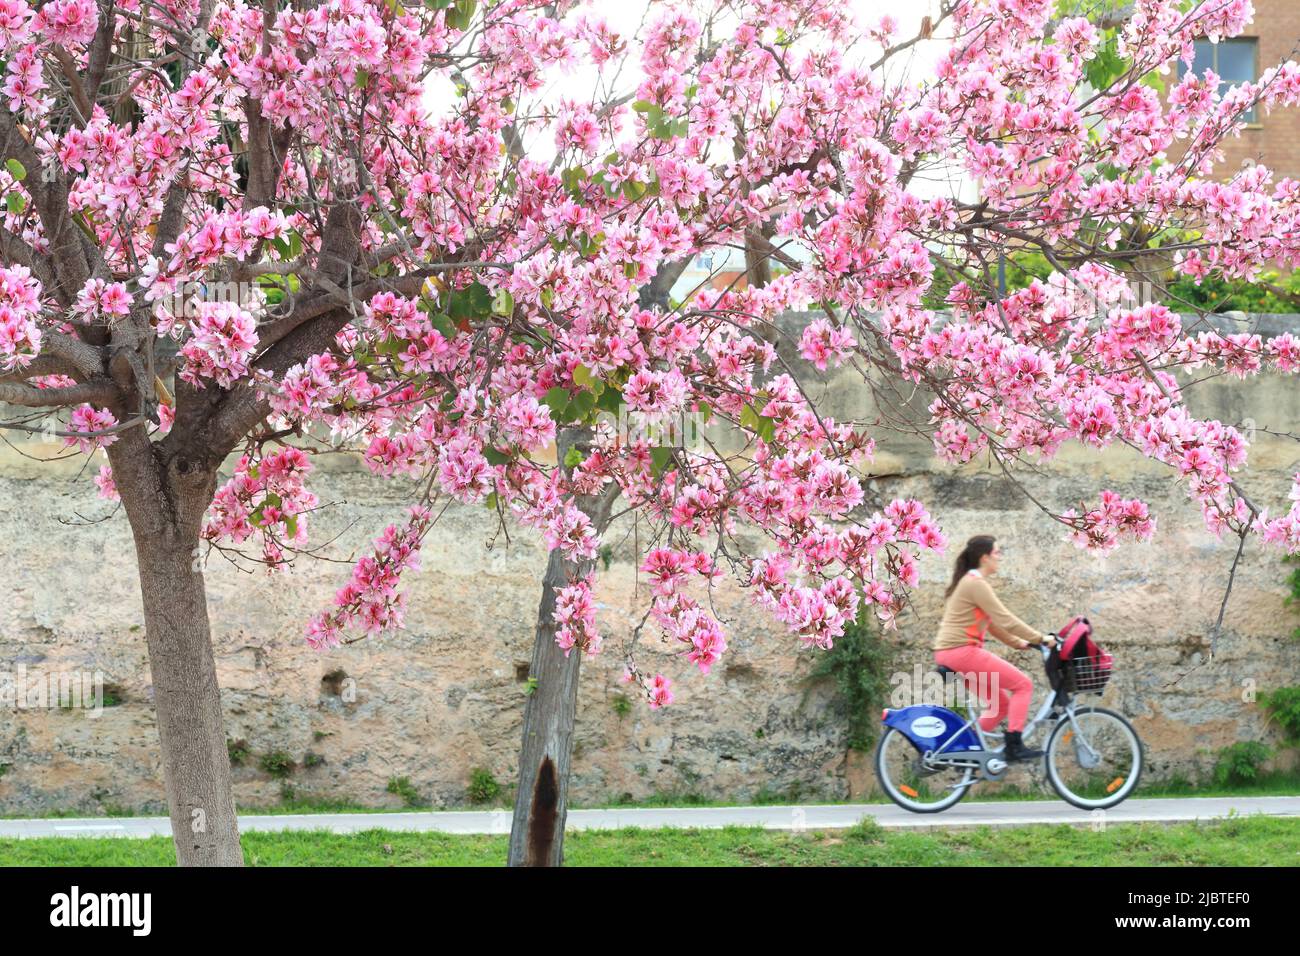 Spanien, Valencia, Turia-Gärten (Jardín del Turia), gemeinsames Fahrrad im öffentlichen Park eröffnet im Jahr 1986, blühende Bäume im Frühjahr Stockfoto